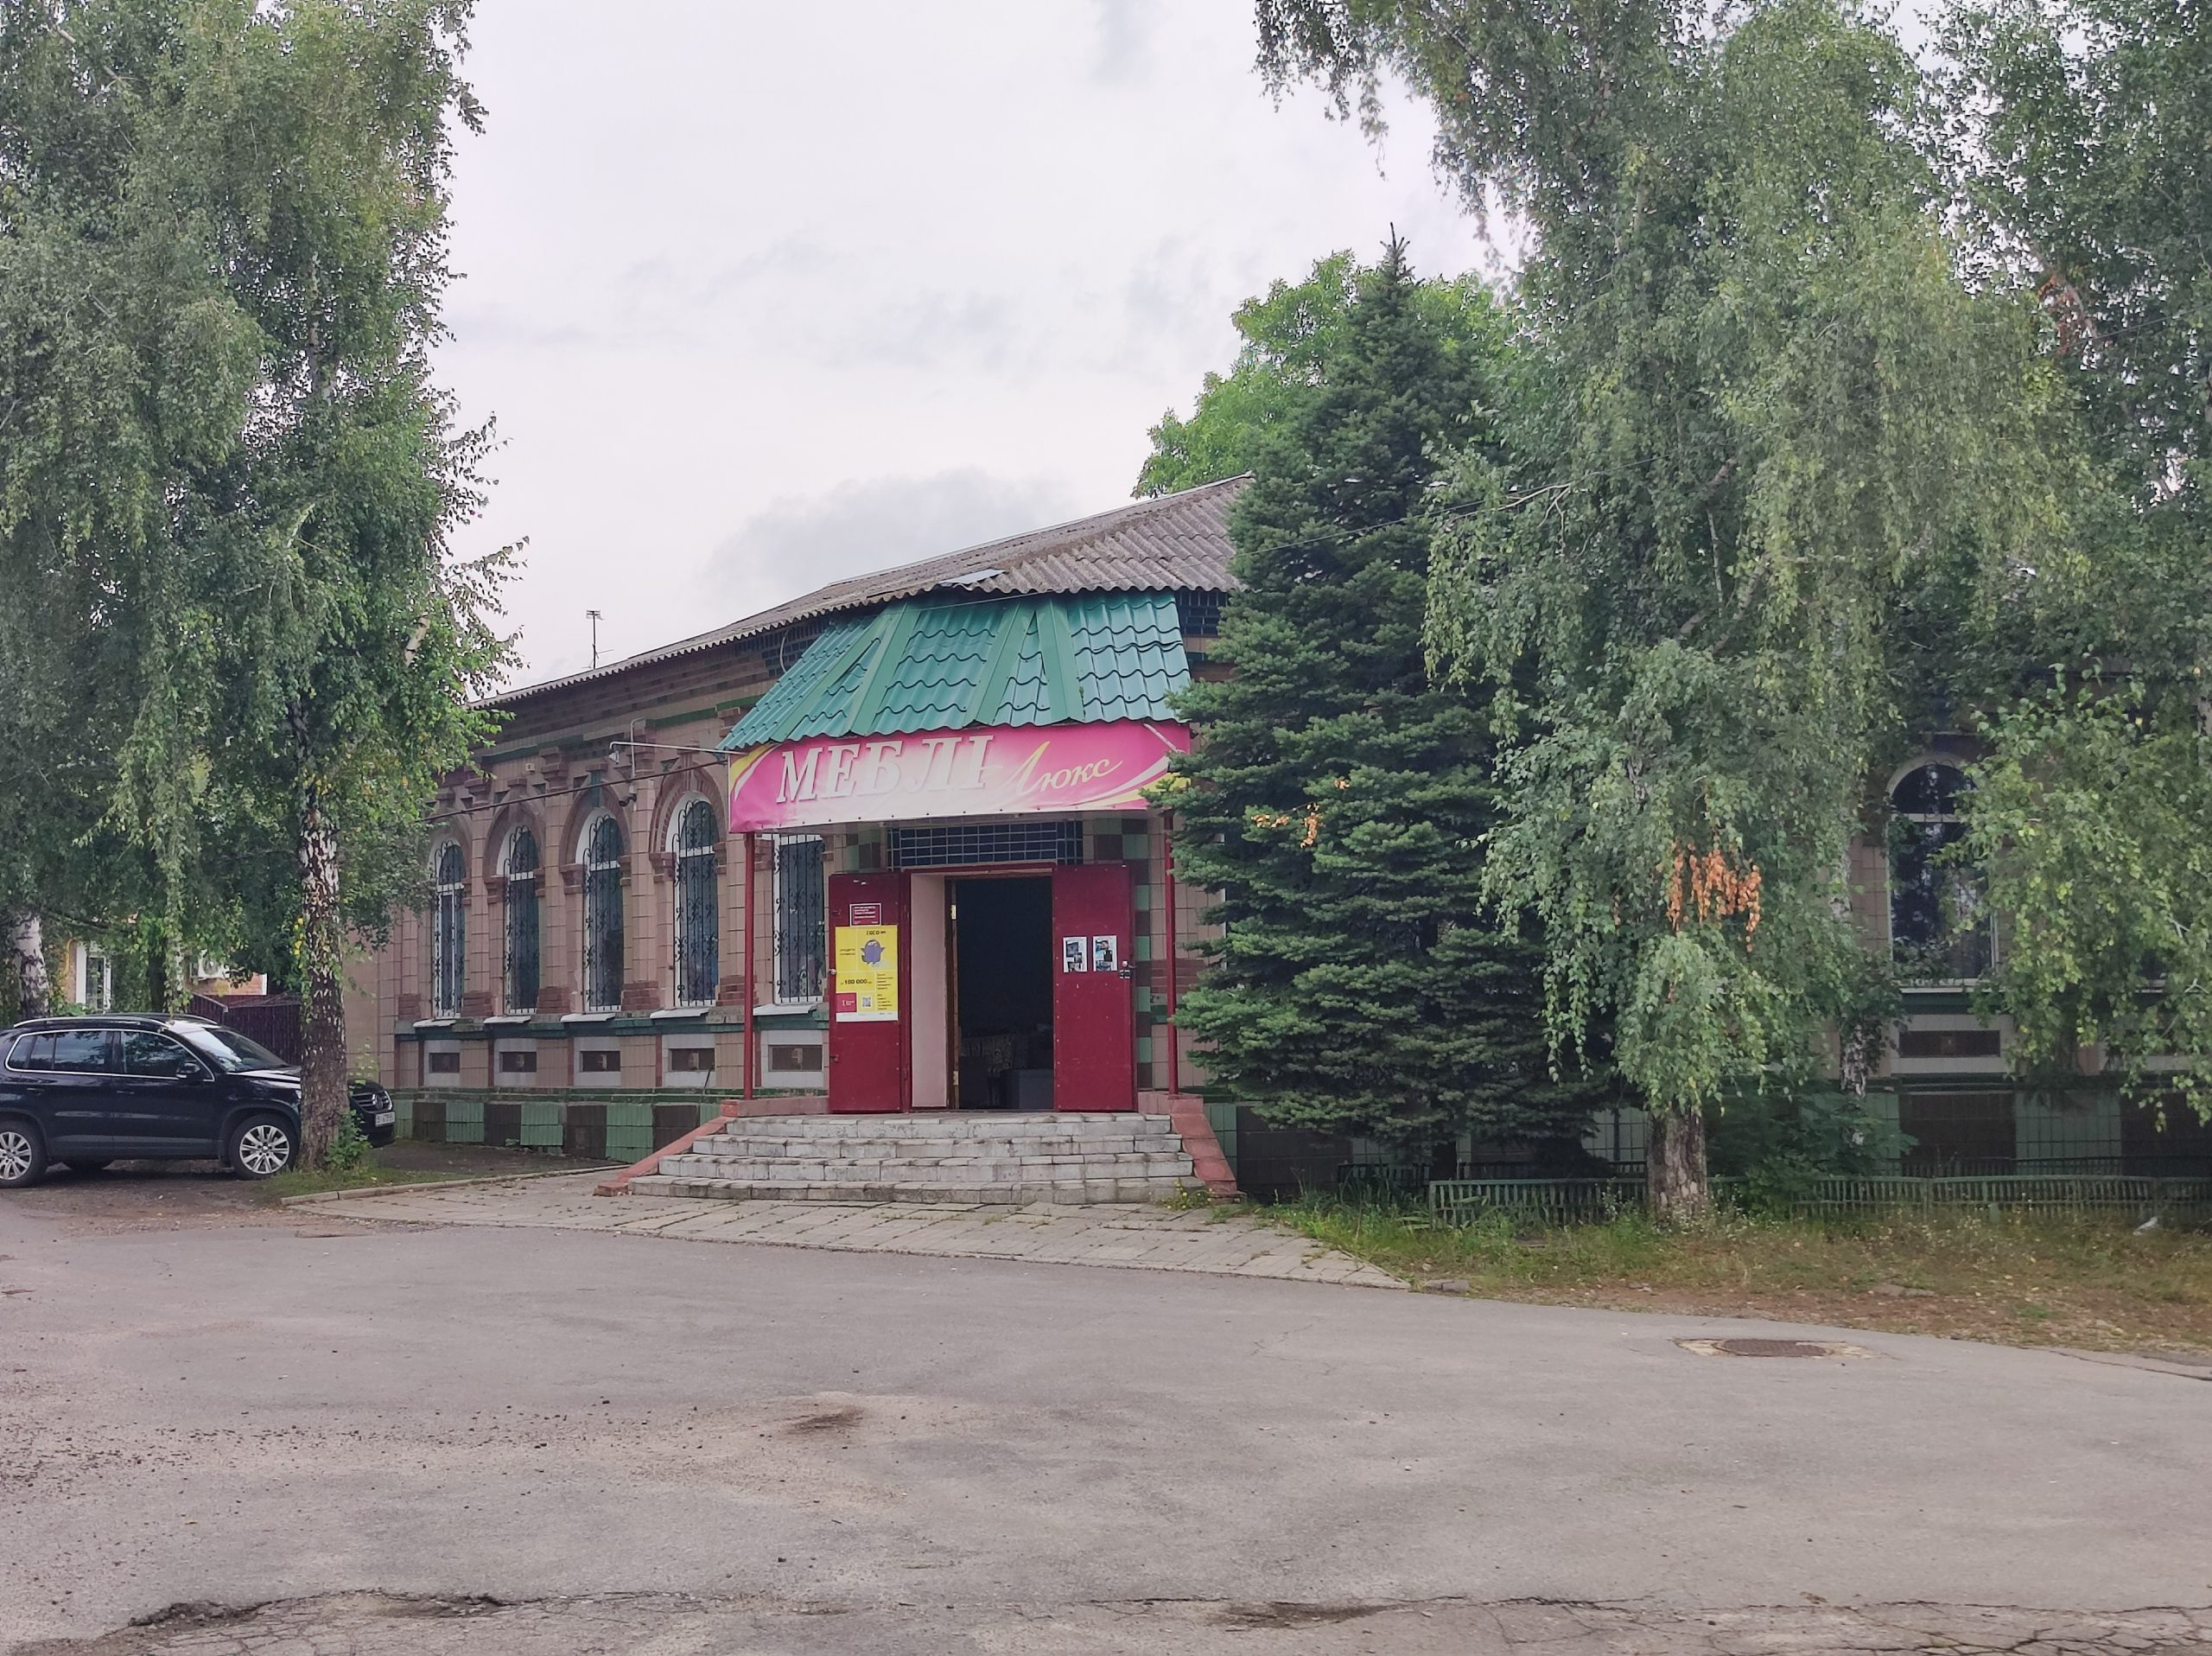 Меблі Люкс, магазин в м.Кобиляки, Полтавської області